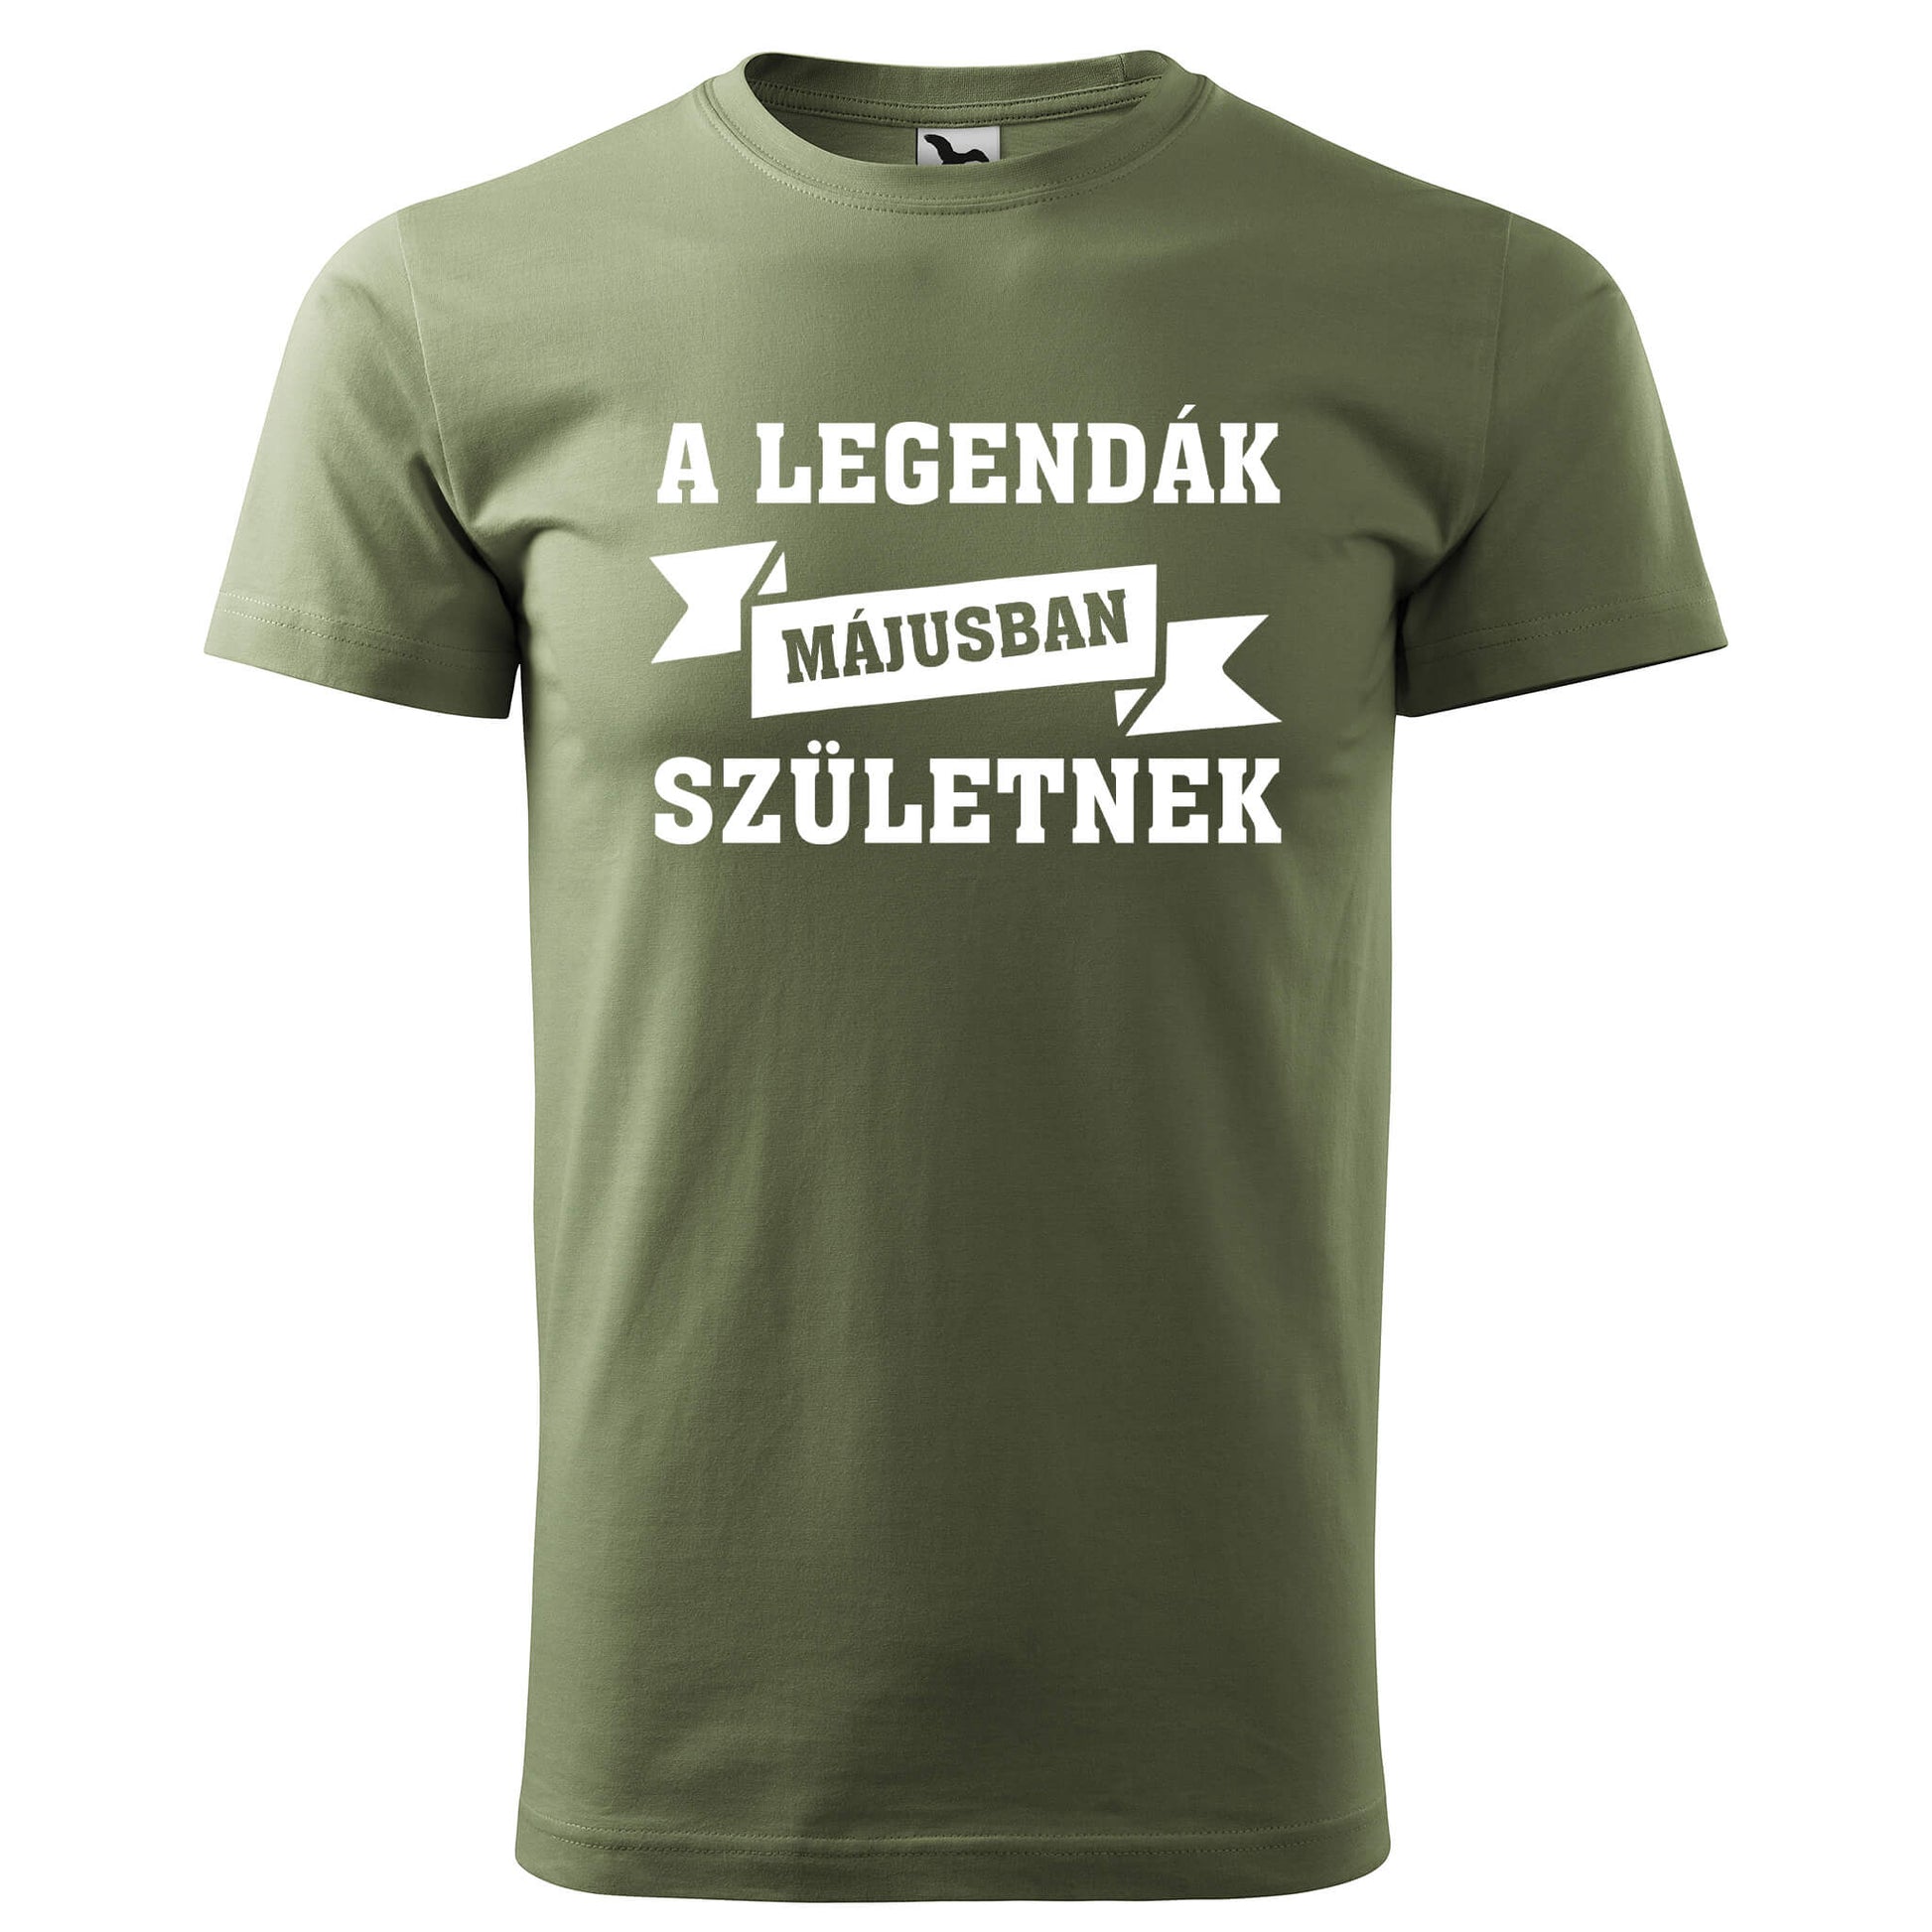 T-shirt - A legendák májusban születnek - Customizable - rvdesignprint